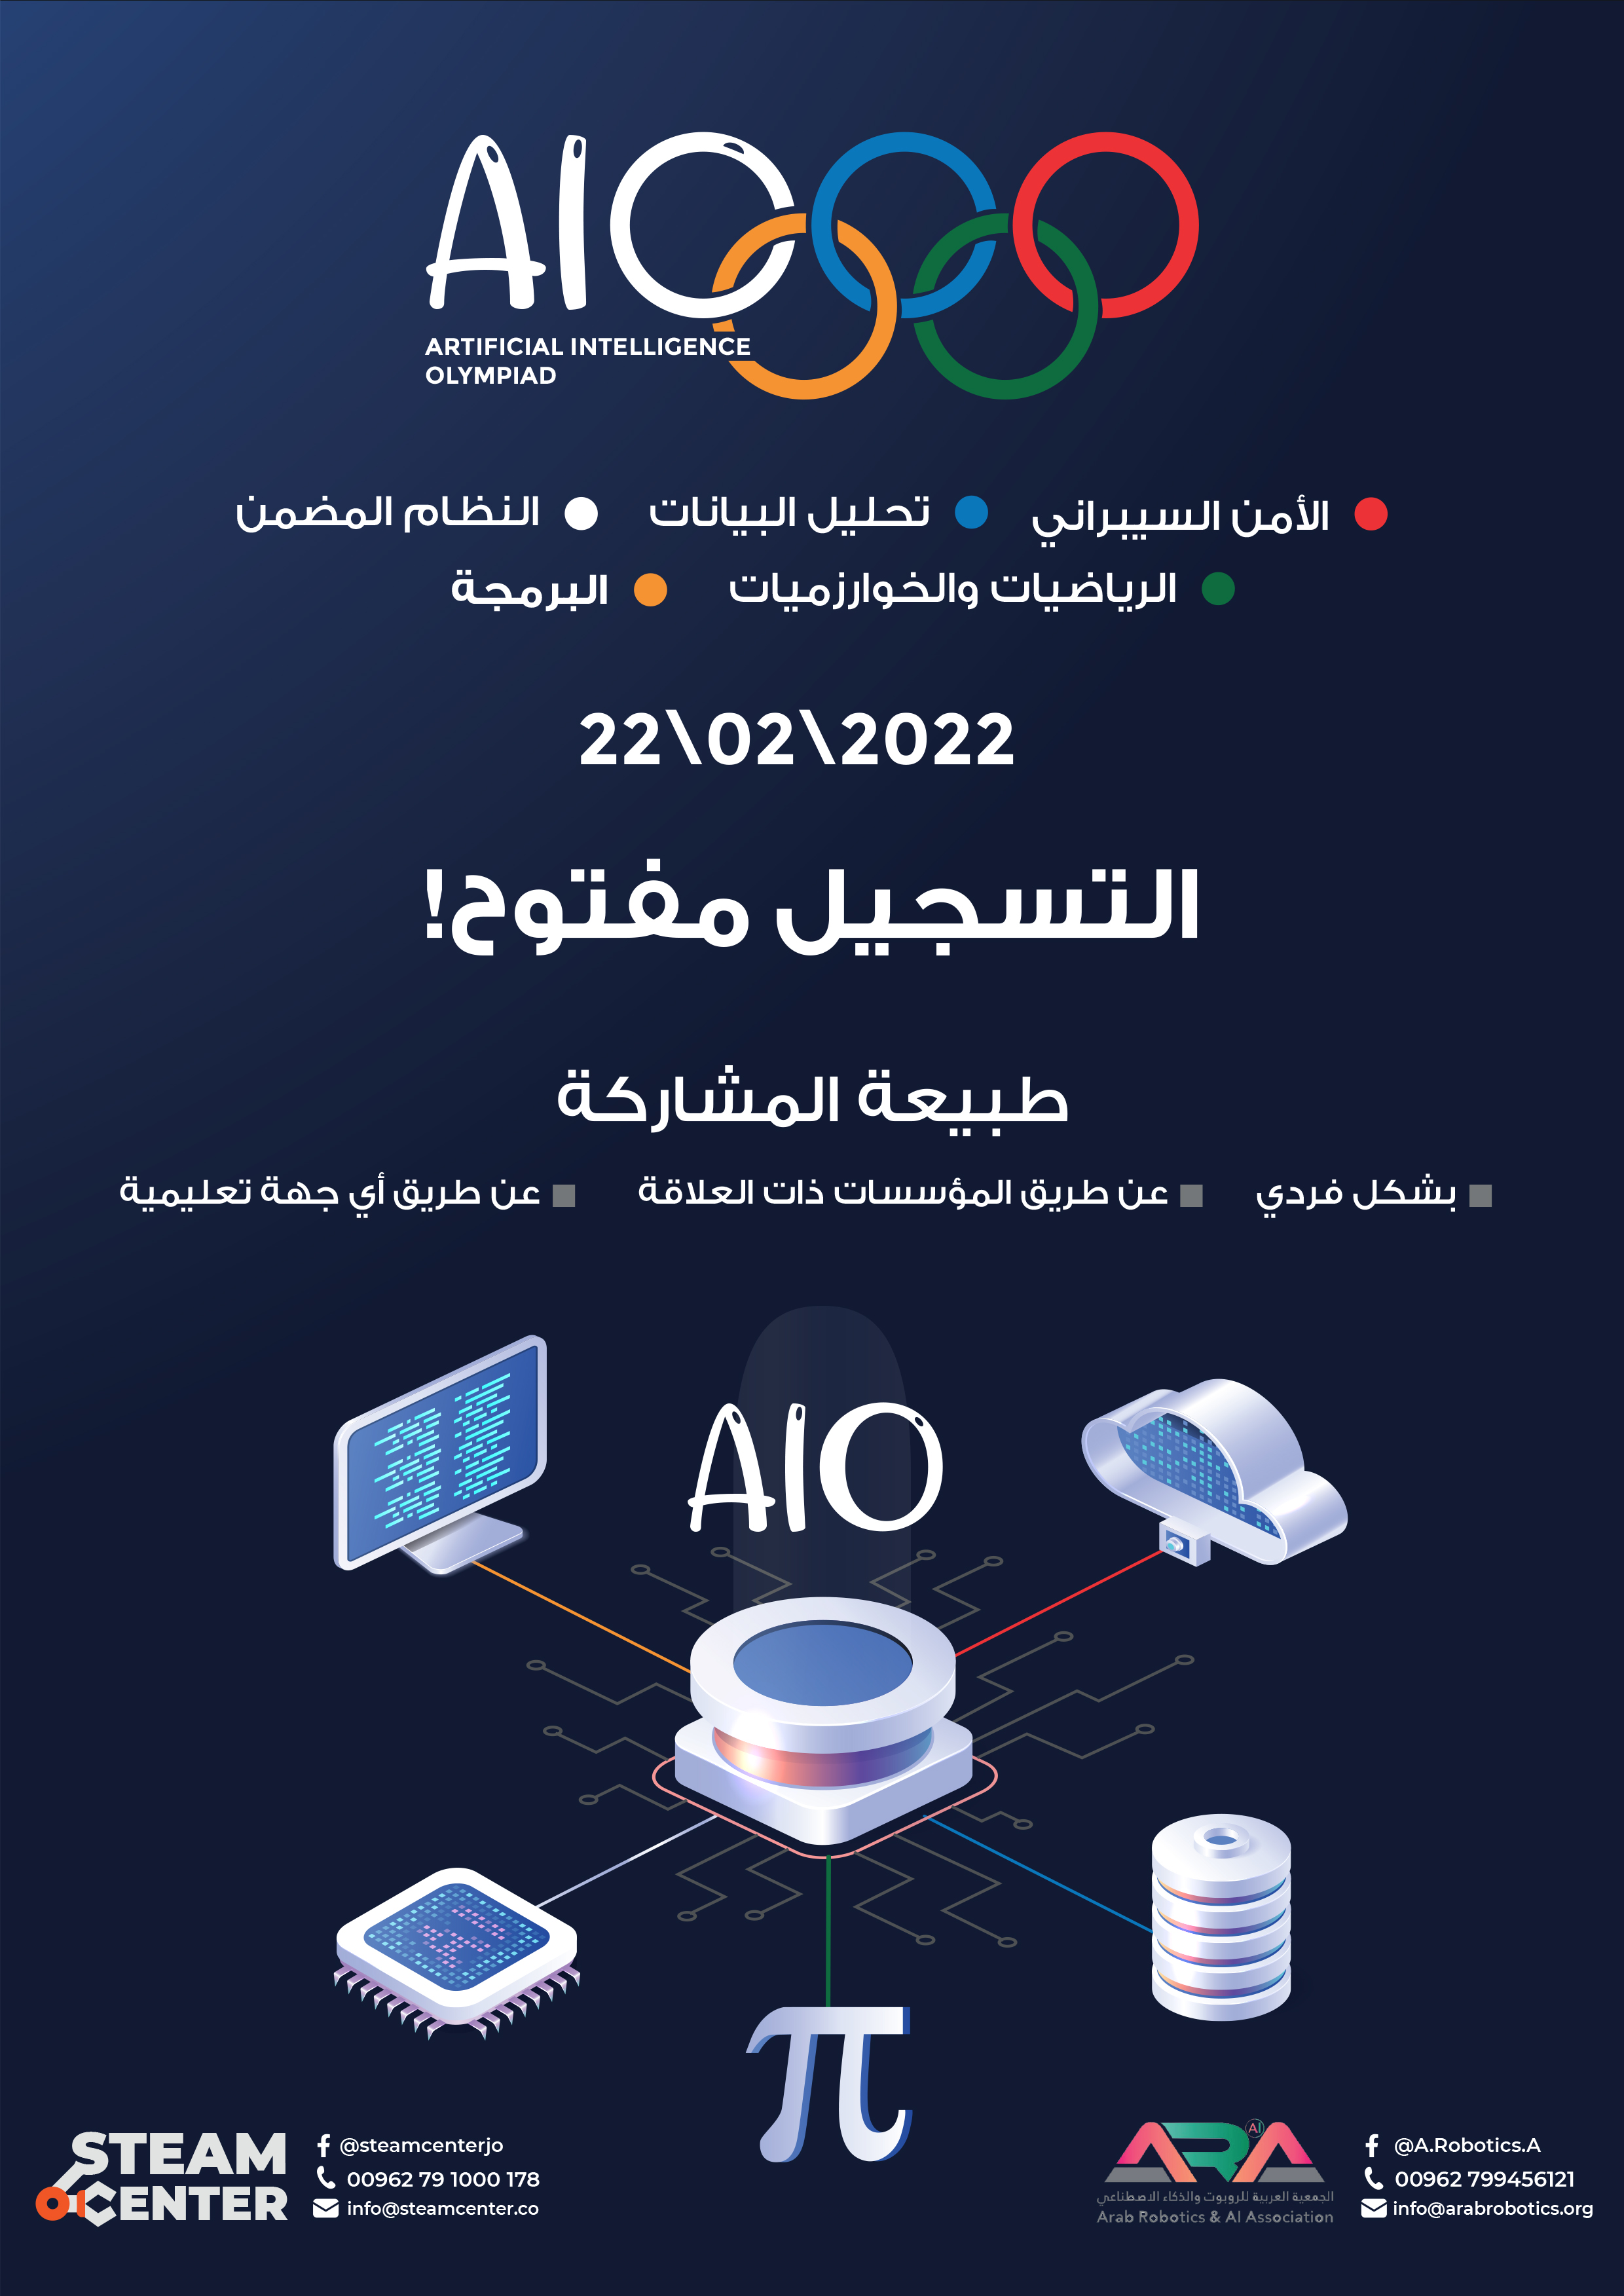 دعوة للمشاركة في الأولمبياد العربي للذكاء الاصطناعي والأول على المستوى العربي